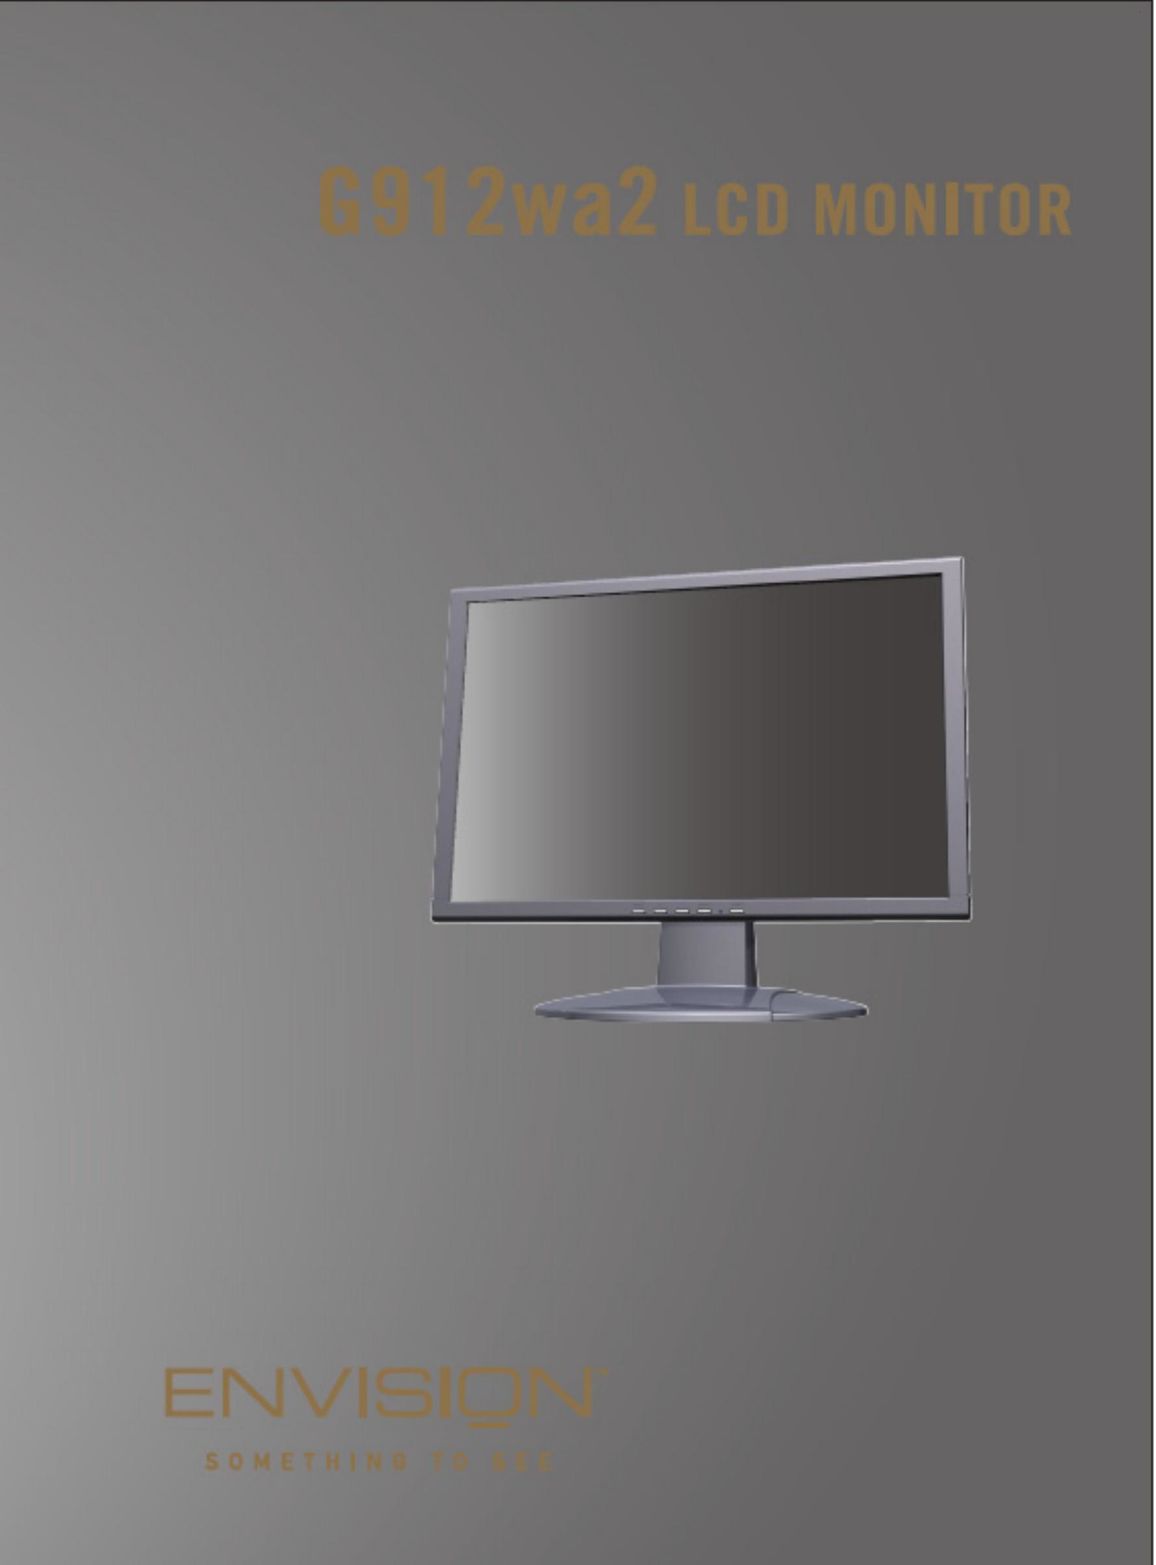 Envision Peripherals G912WA2 Computer Monitor User Manual